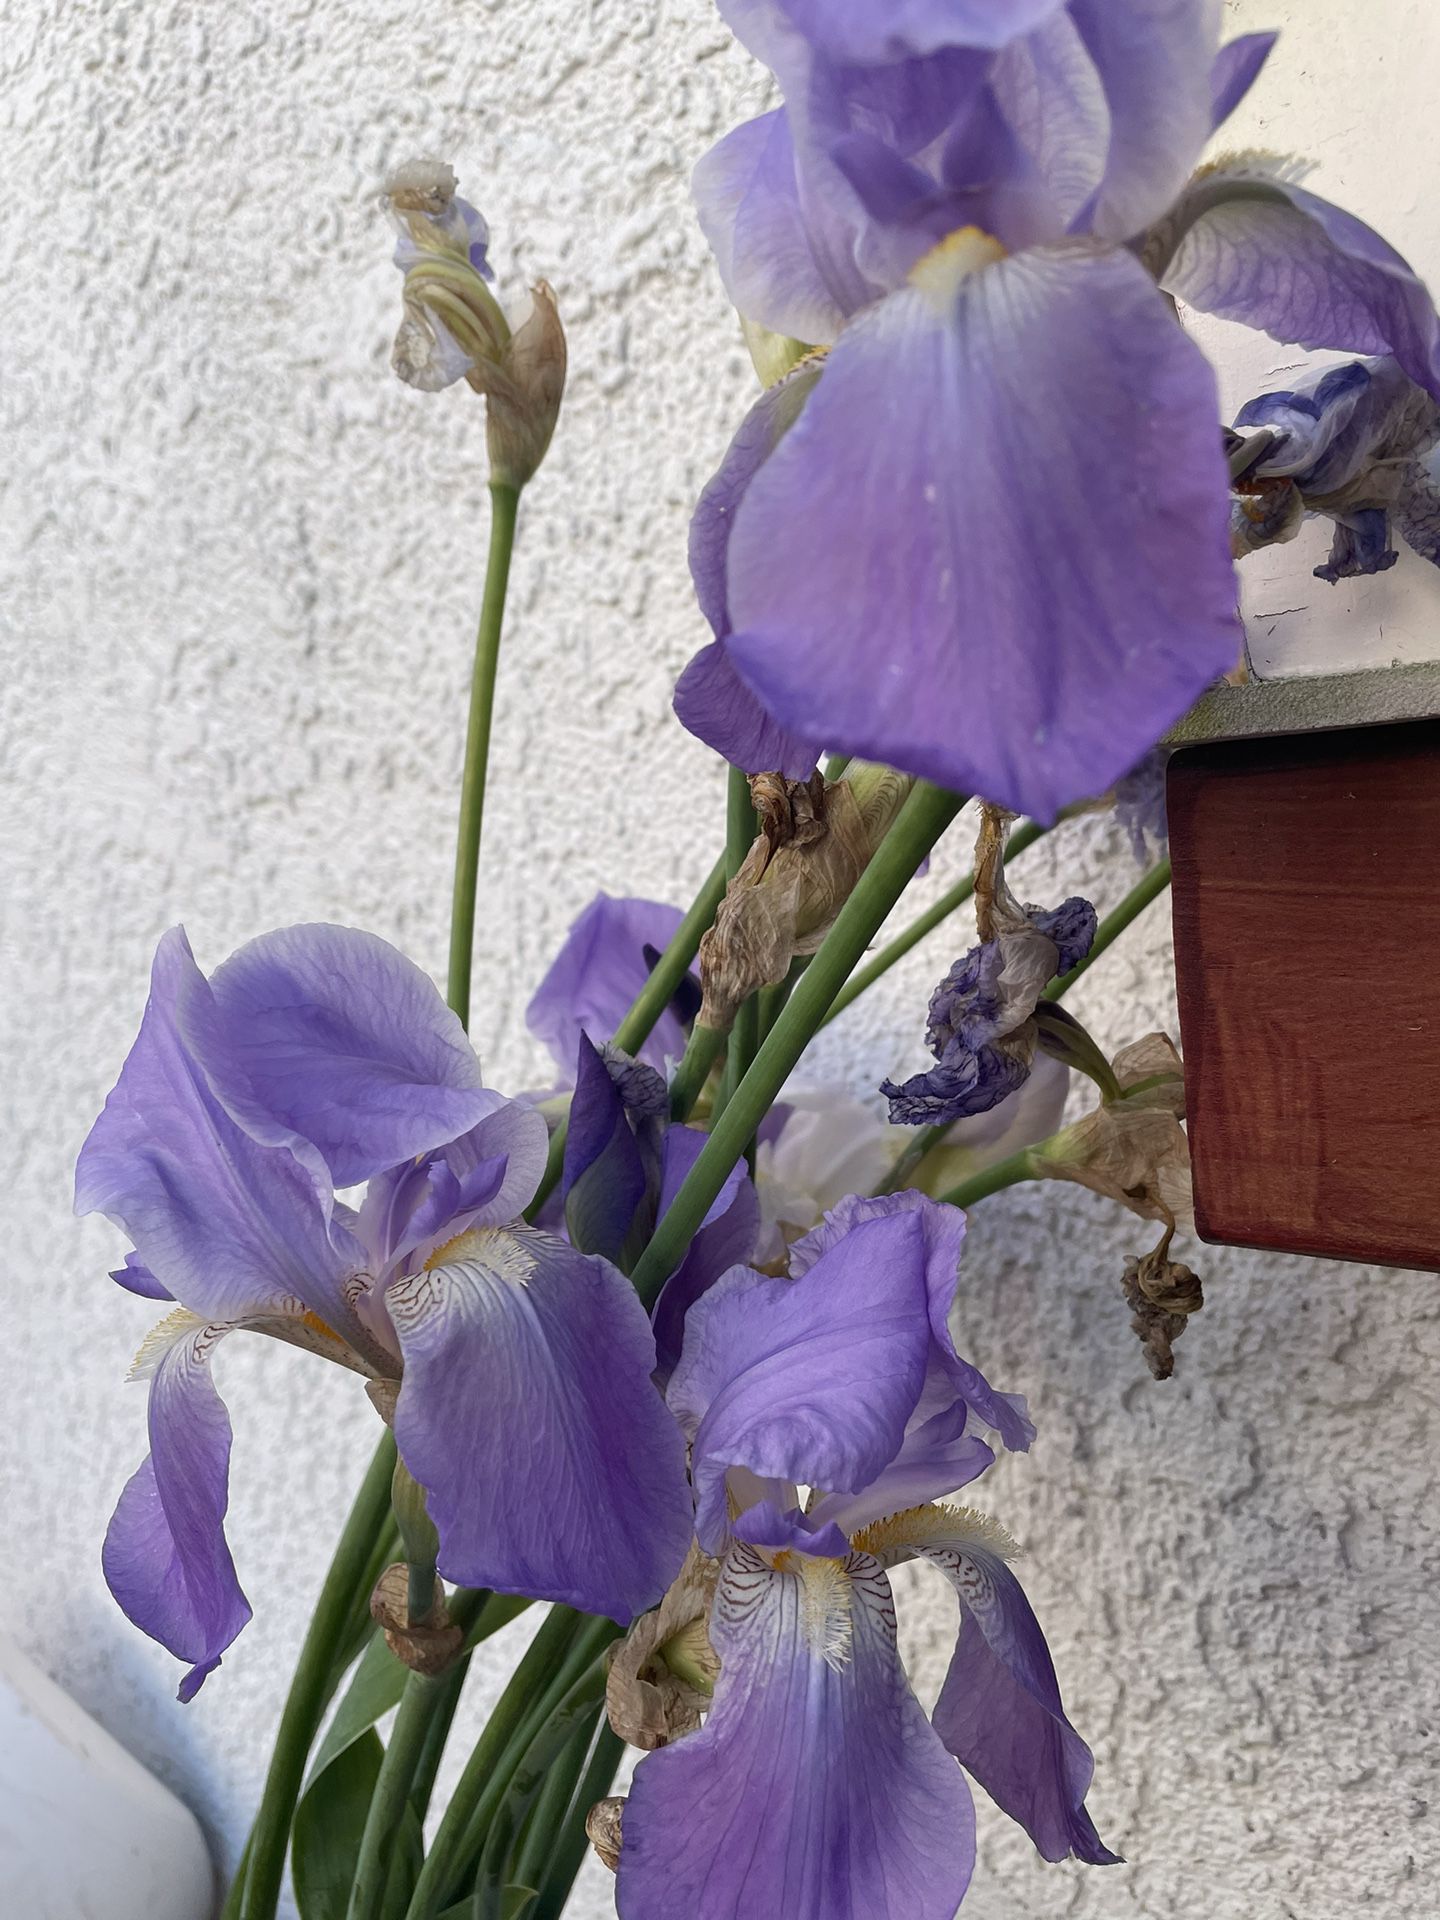 Iris (Blue/Lavander)